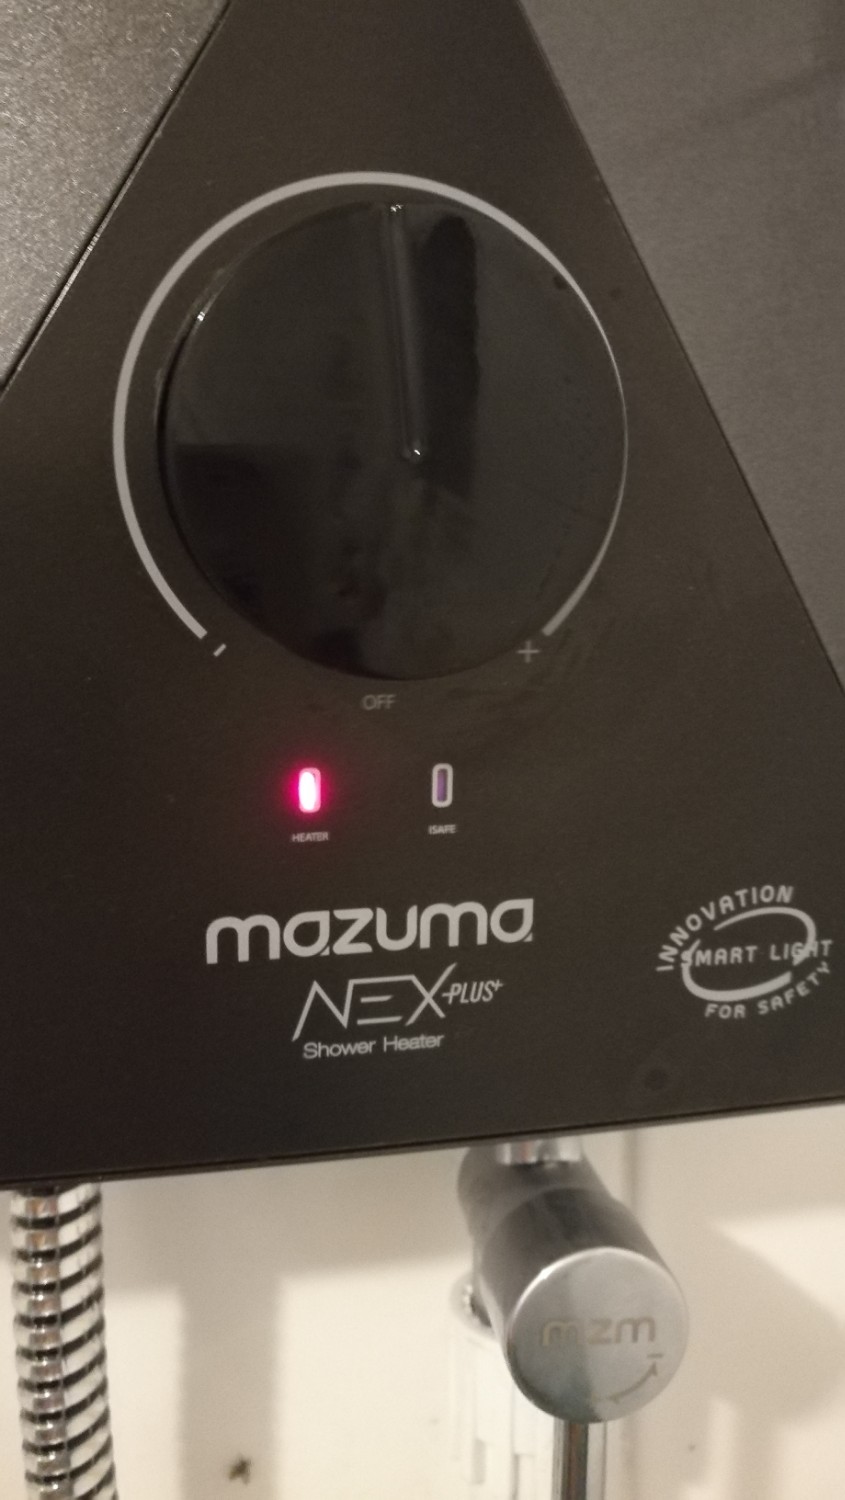 เครื่องทำน้ำอุ่น Mazuma ไฟโชว์ ลงกราวไม่ติด - Pantip